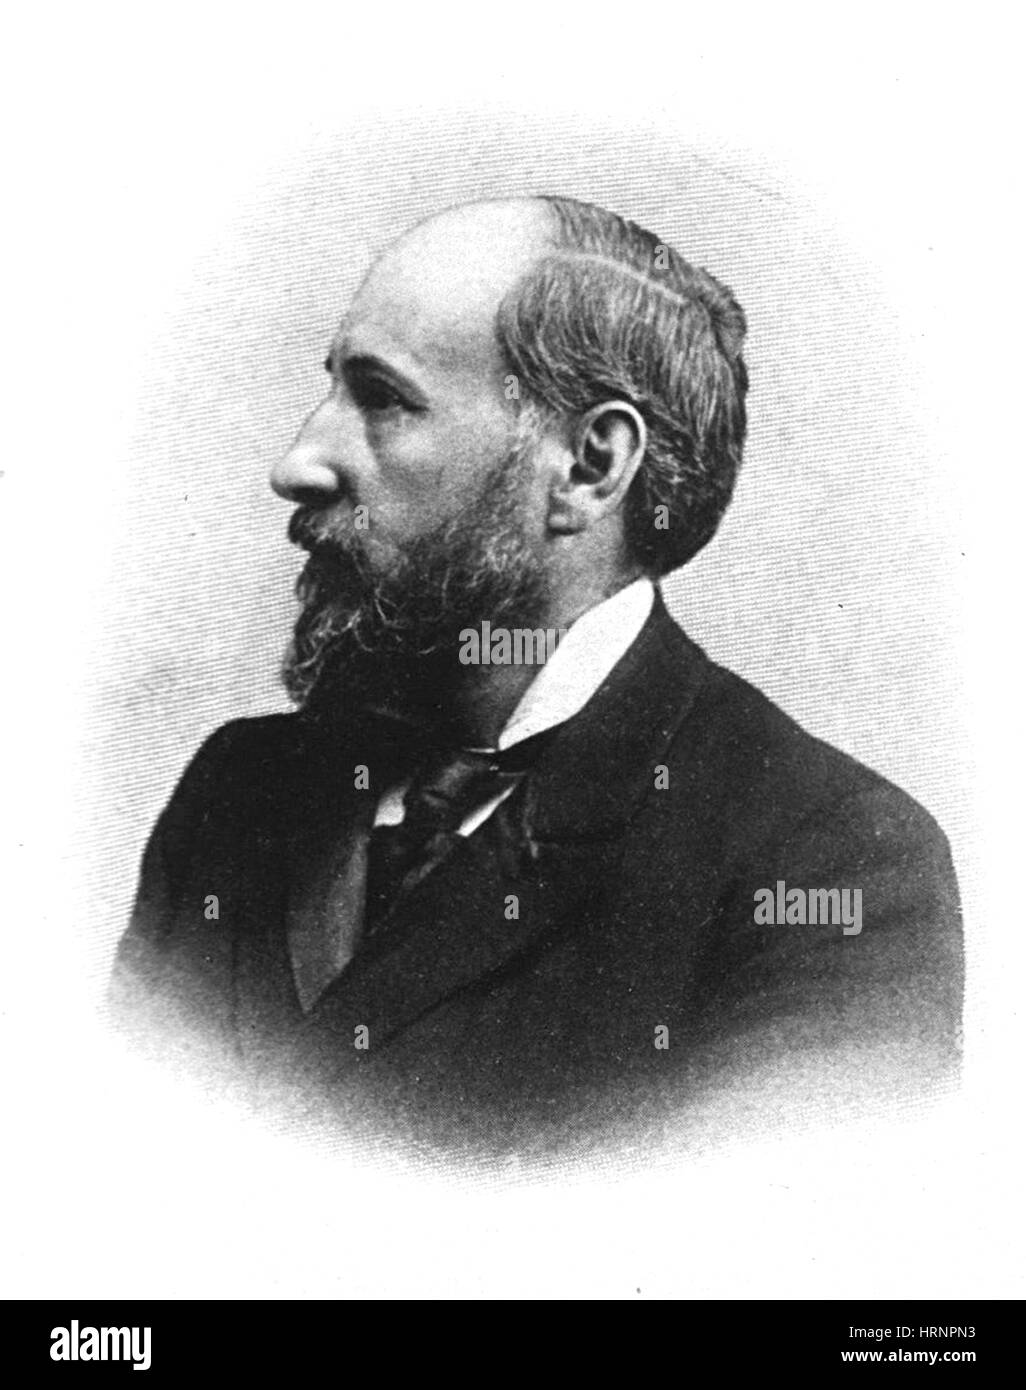 Santiago RamÌ n y Cajal, Vater der modernen Neurowissenschaften Stockfoto